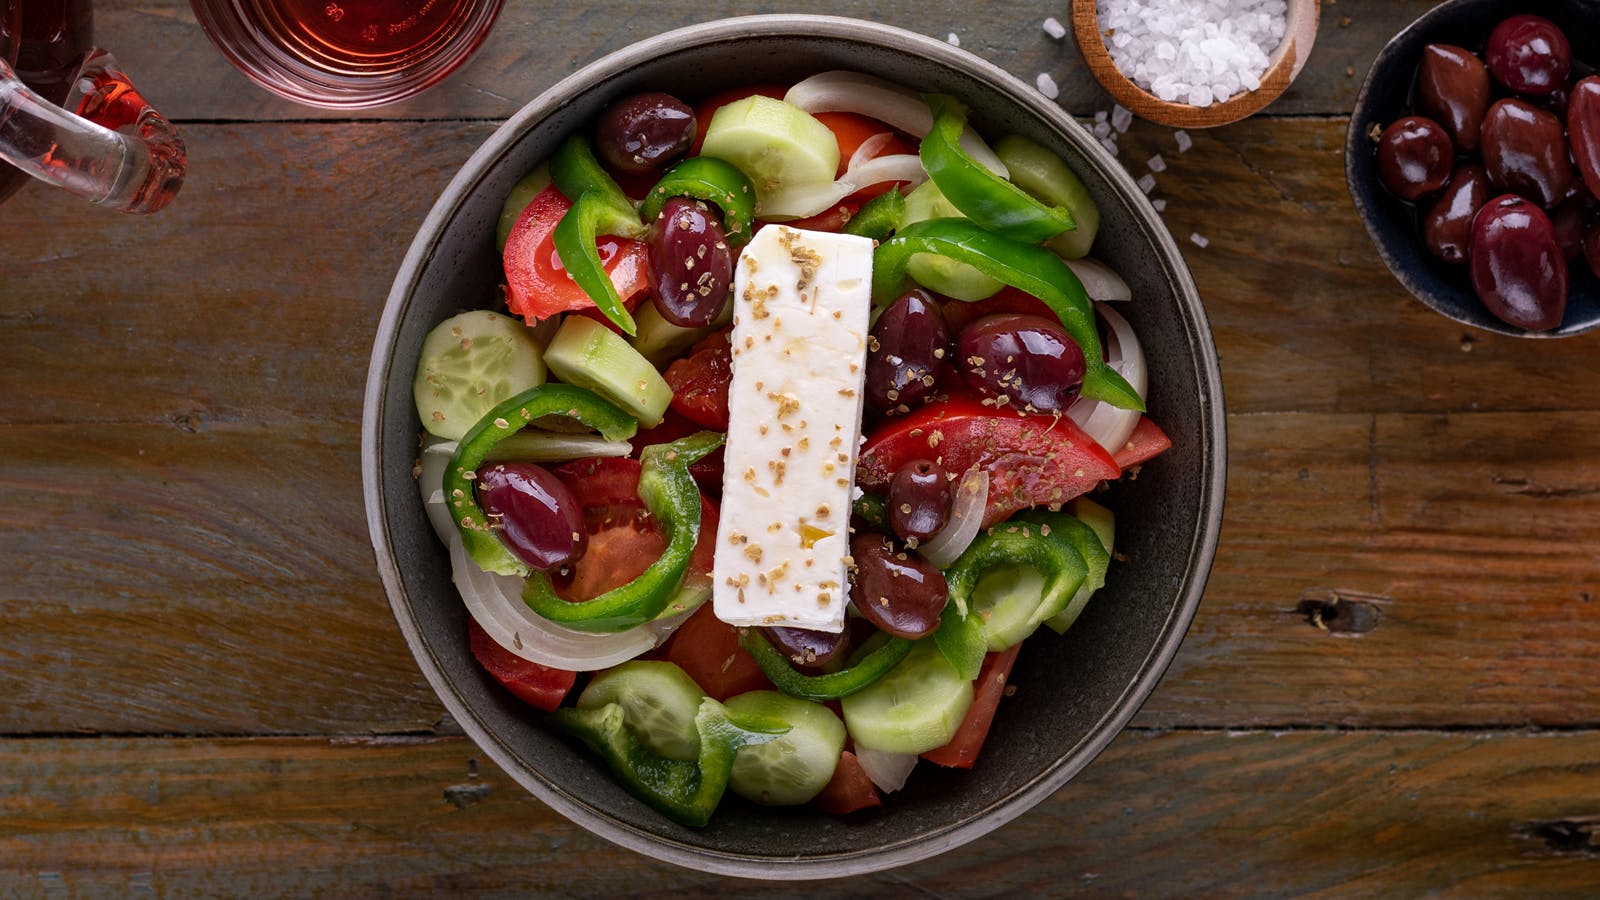 Insalata greca: come preparare facilmente la ricetta originale